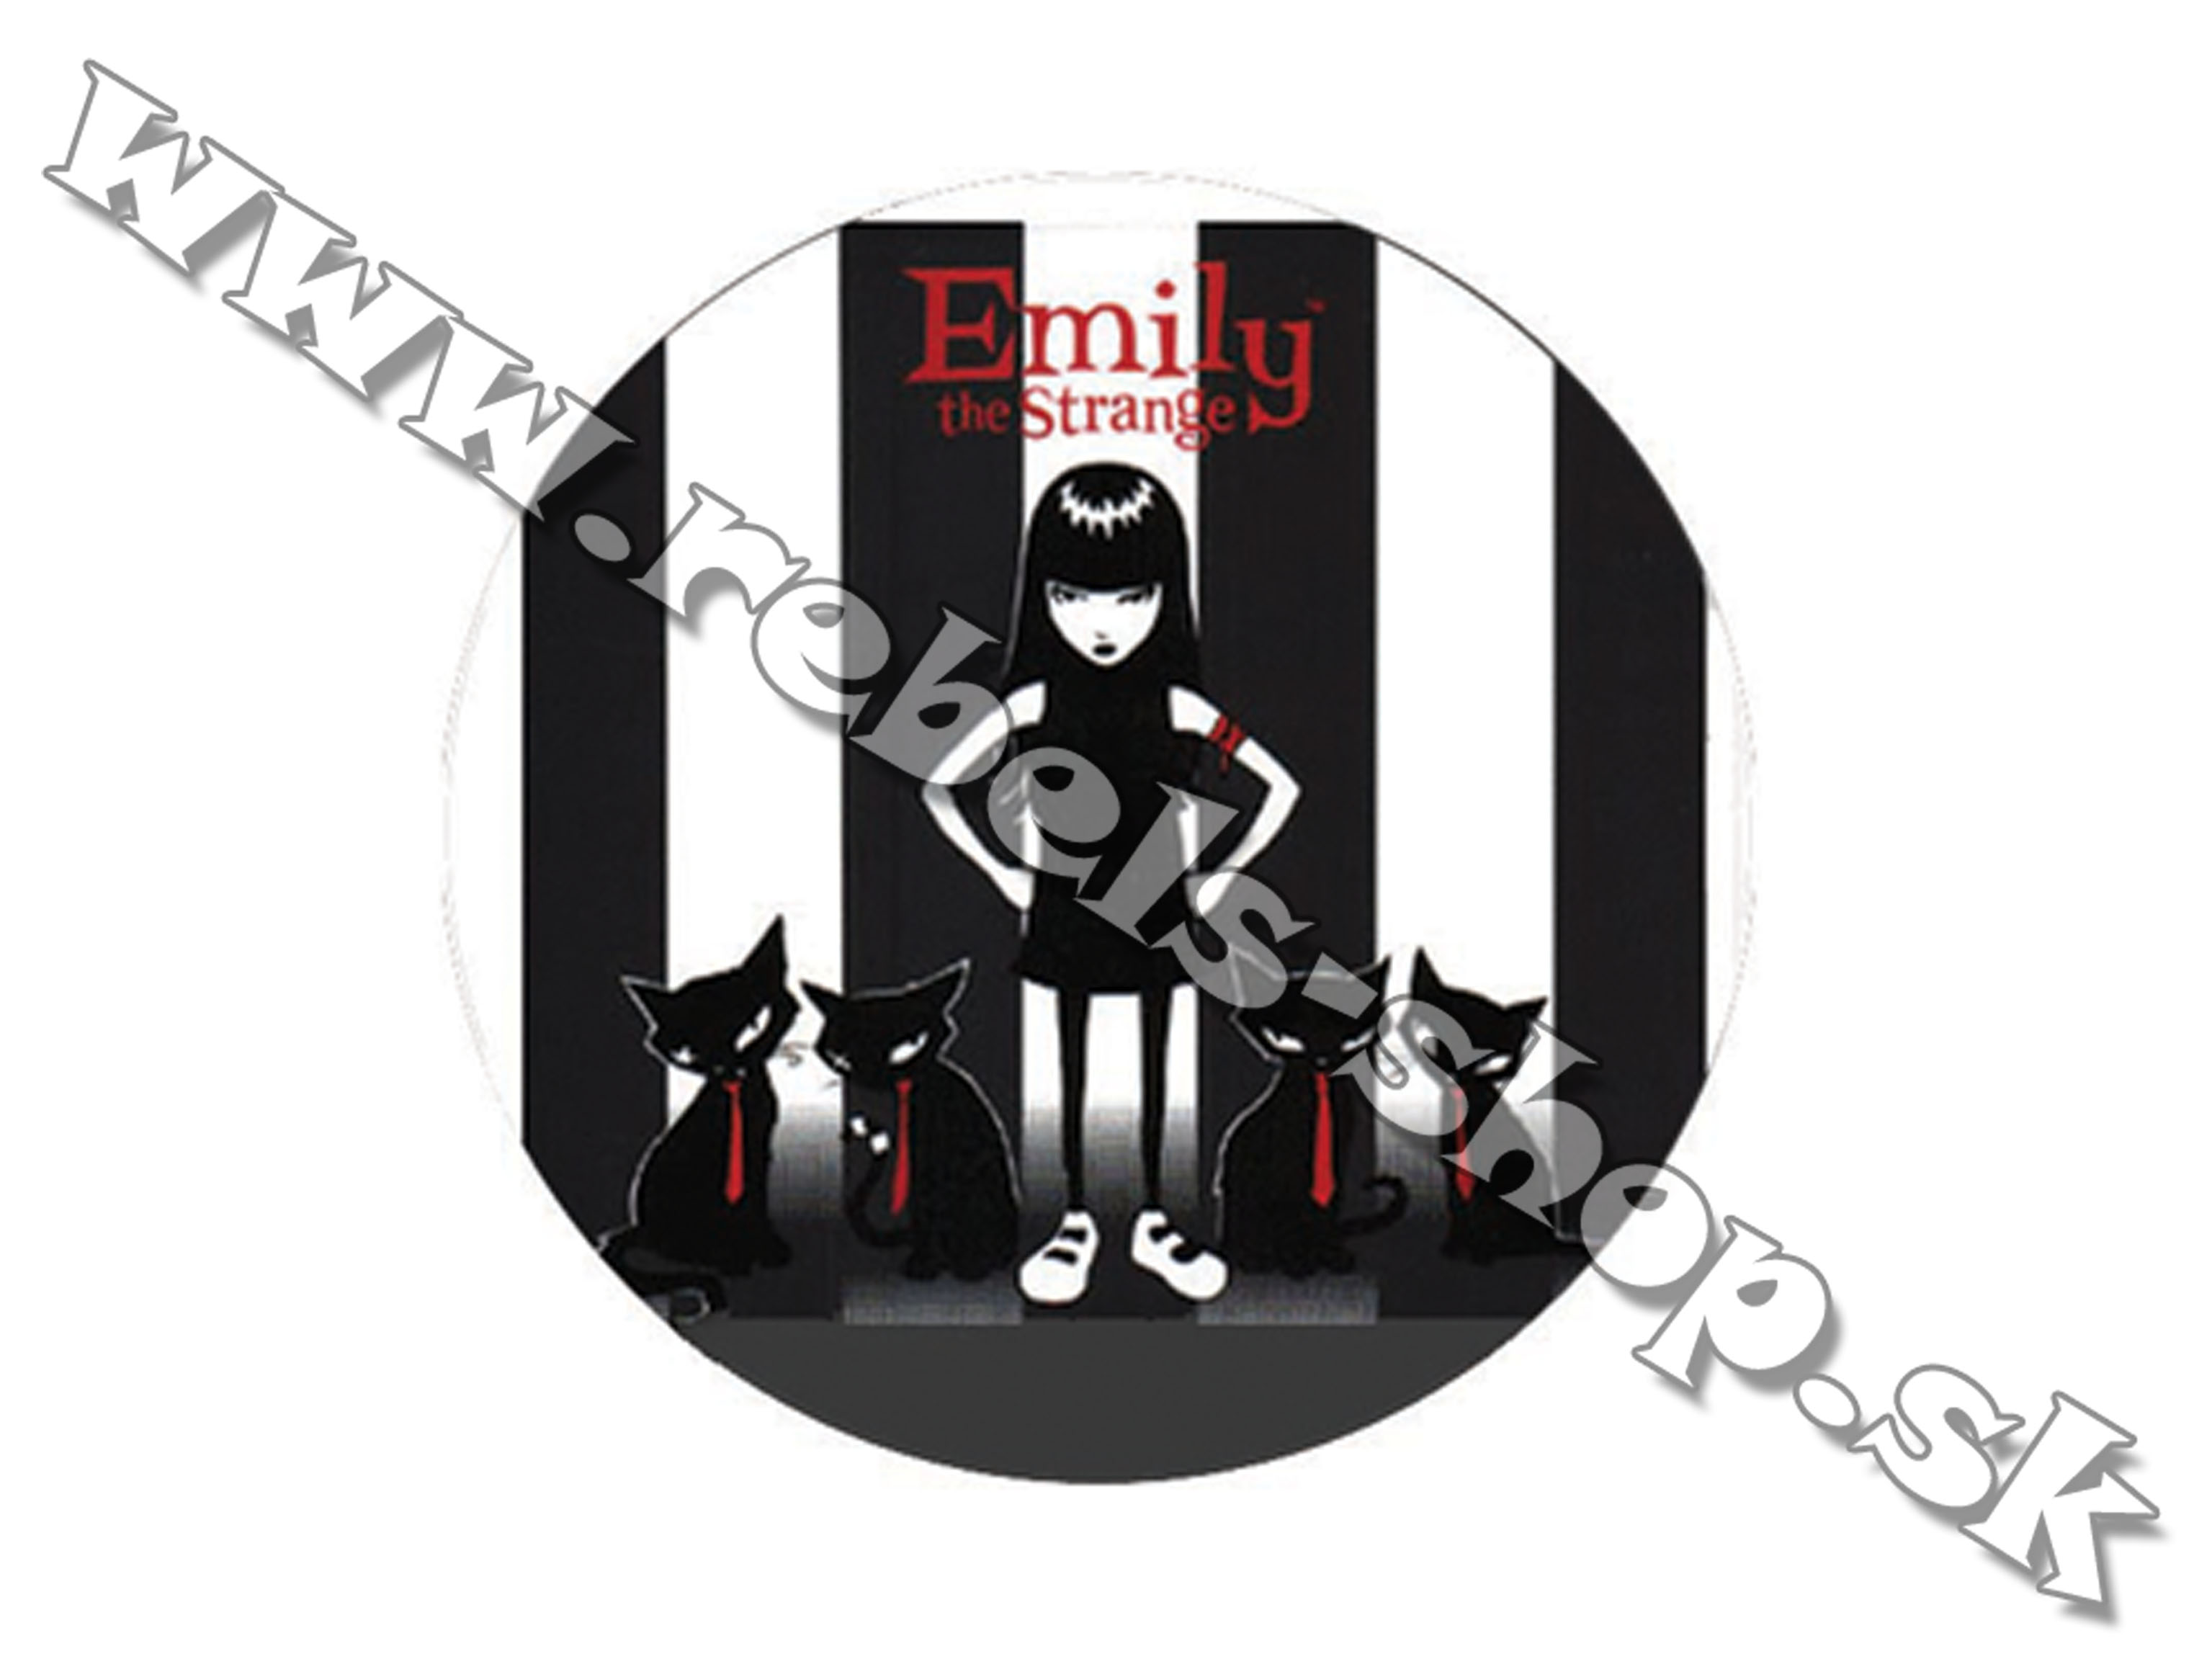 Odznak "Emily"